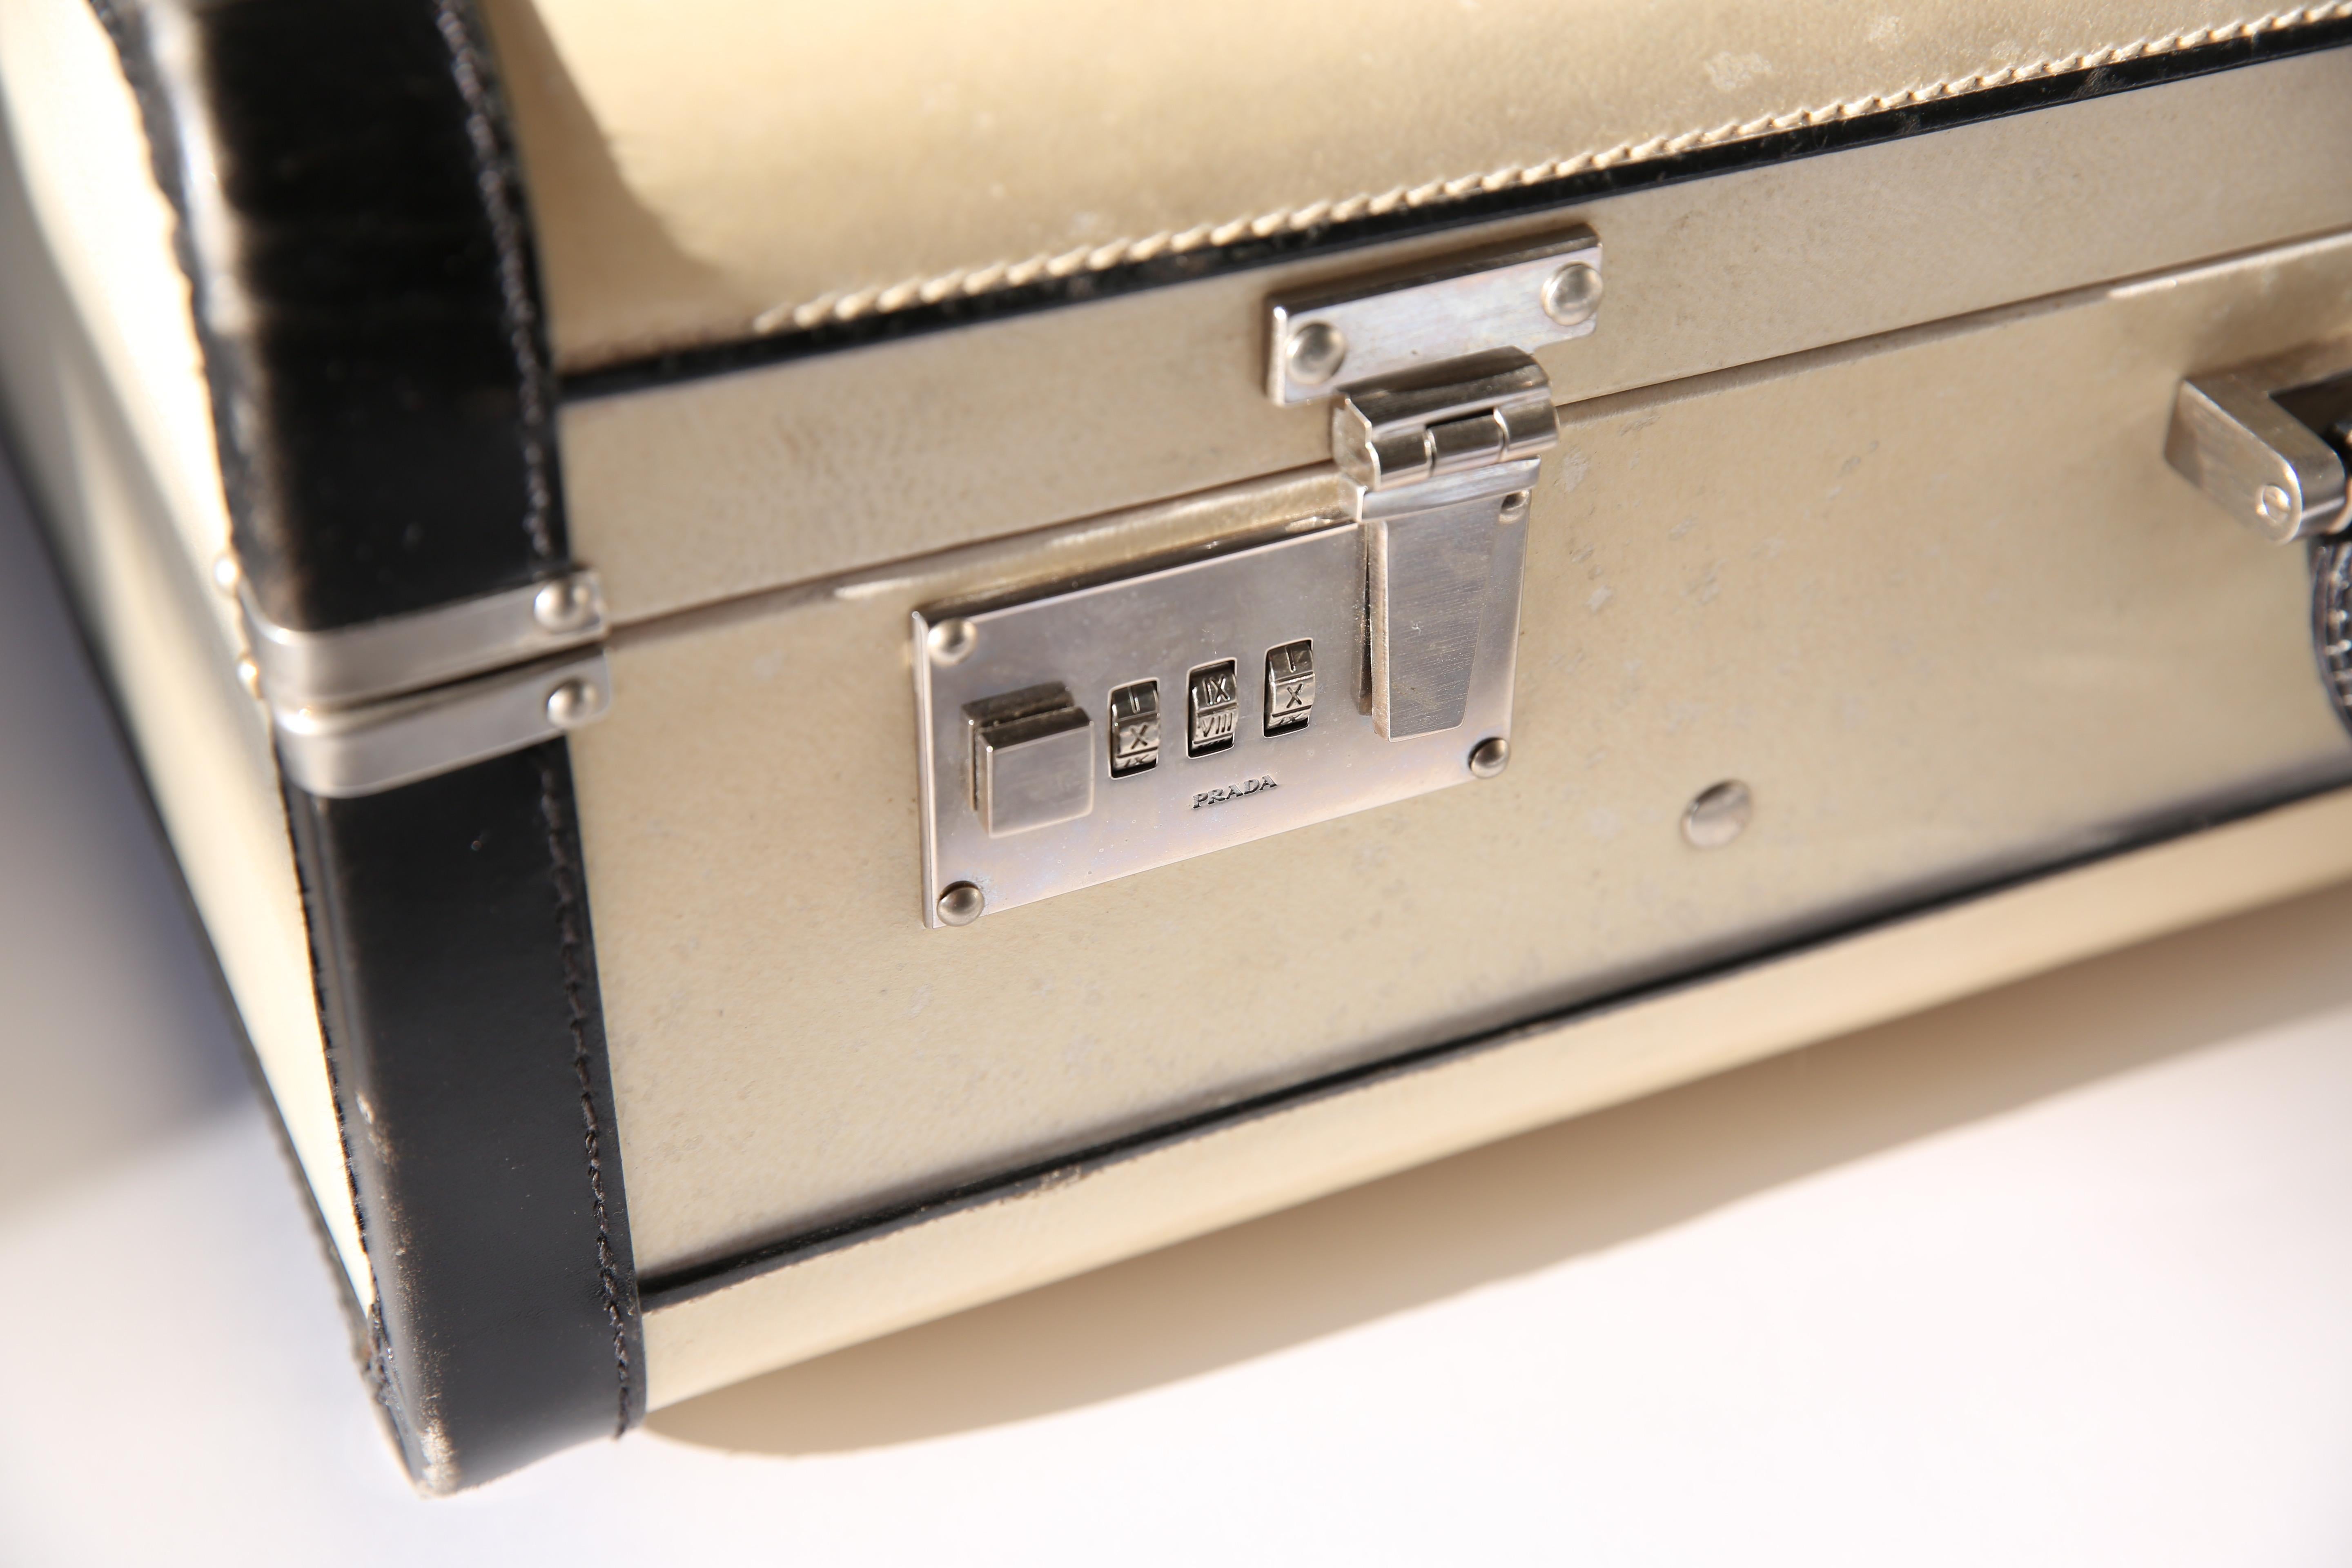 White Prada Pergamena vintage style ivory black hard leather luggage bag suitcase case For Sale